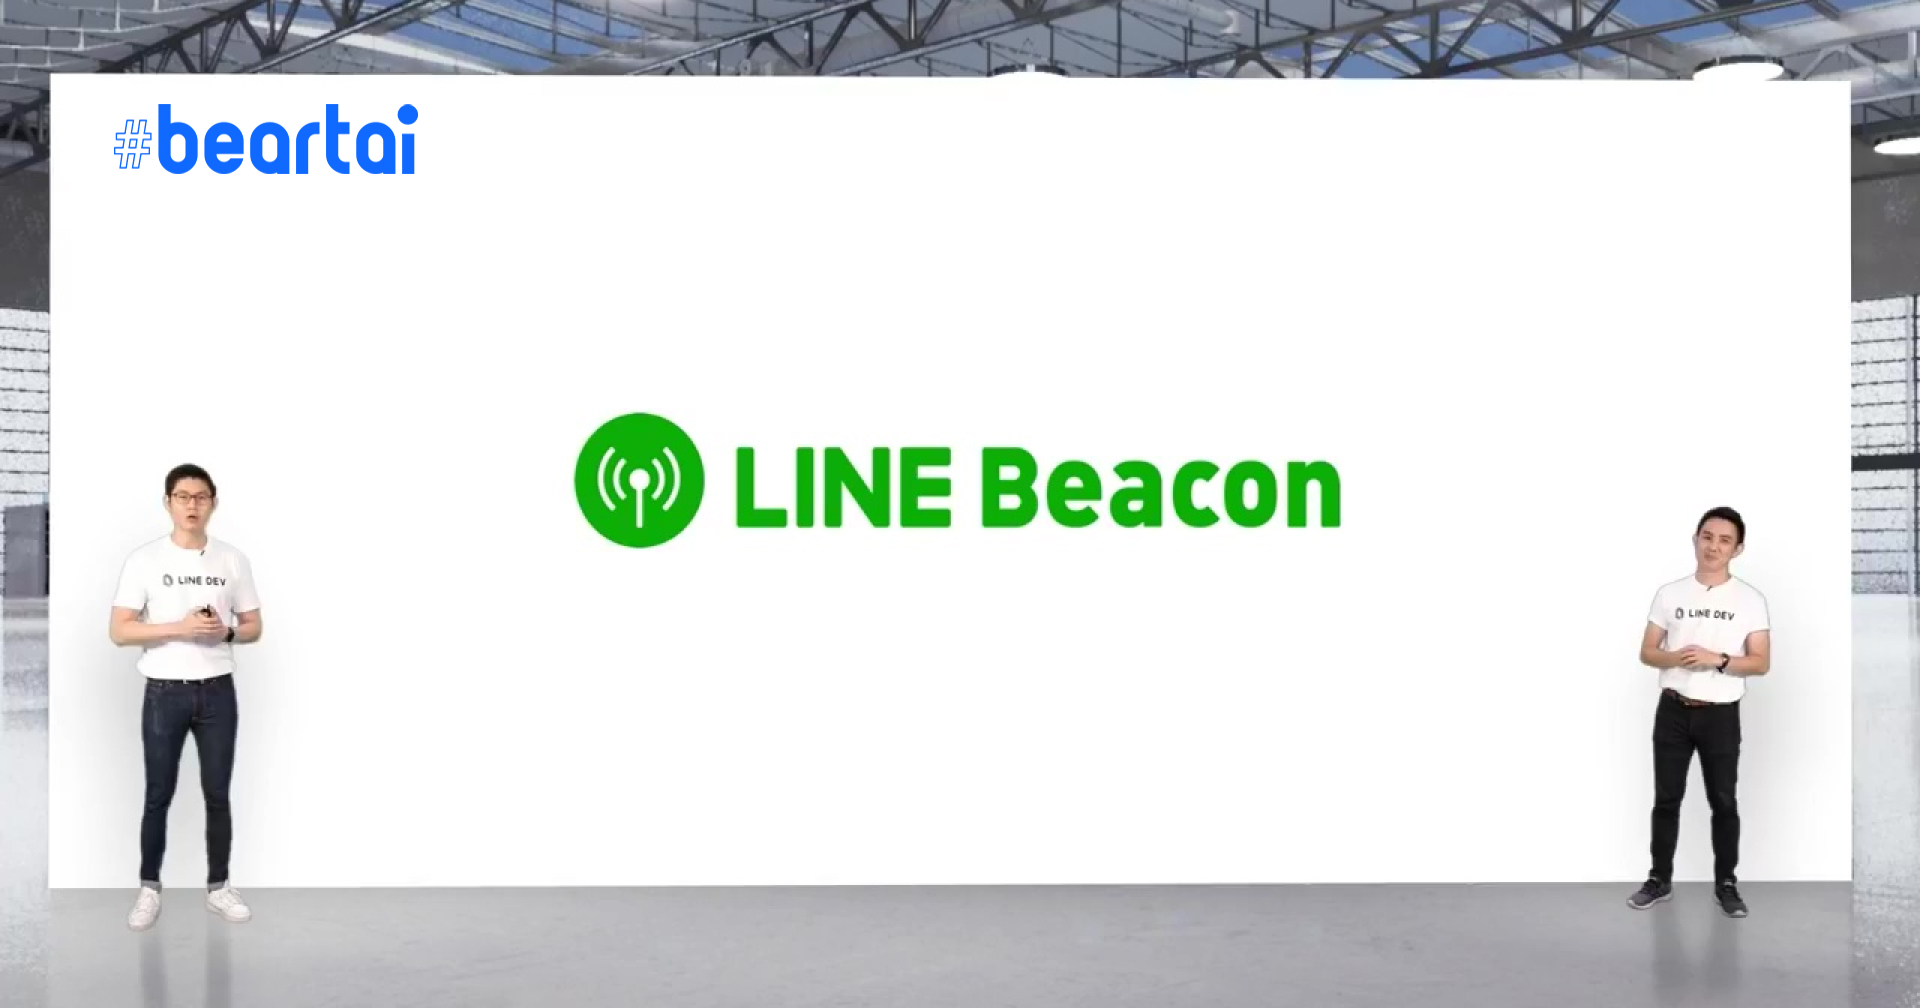 เปิดตัว LINE Beacon SME สื่อสารในรูปแบบใหม่สำหรับผู้ประกอบการ ผ่านแอป LINE เตรียมวางขายเร็ว ๆ นี้